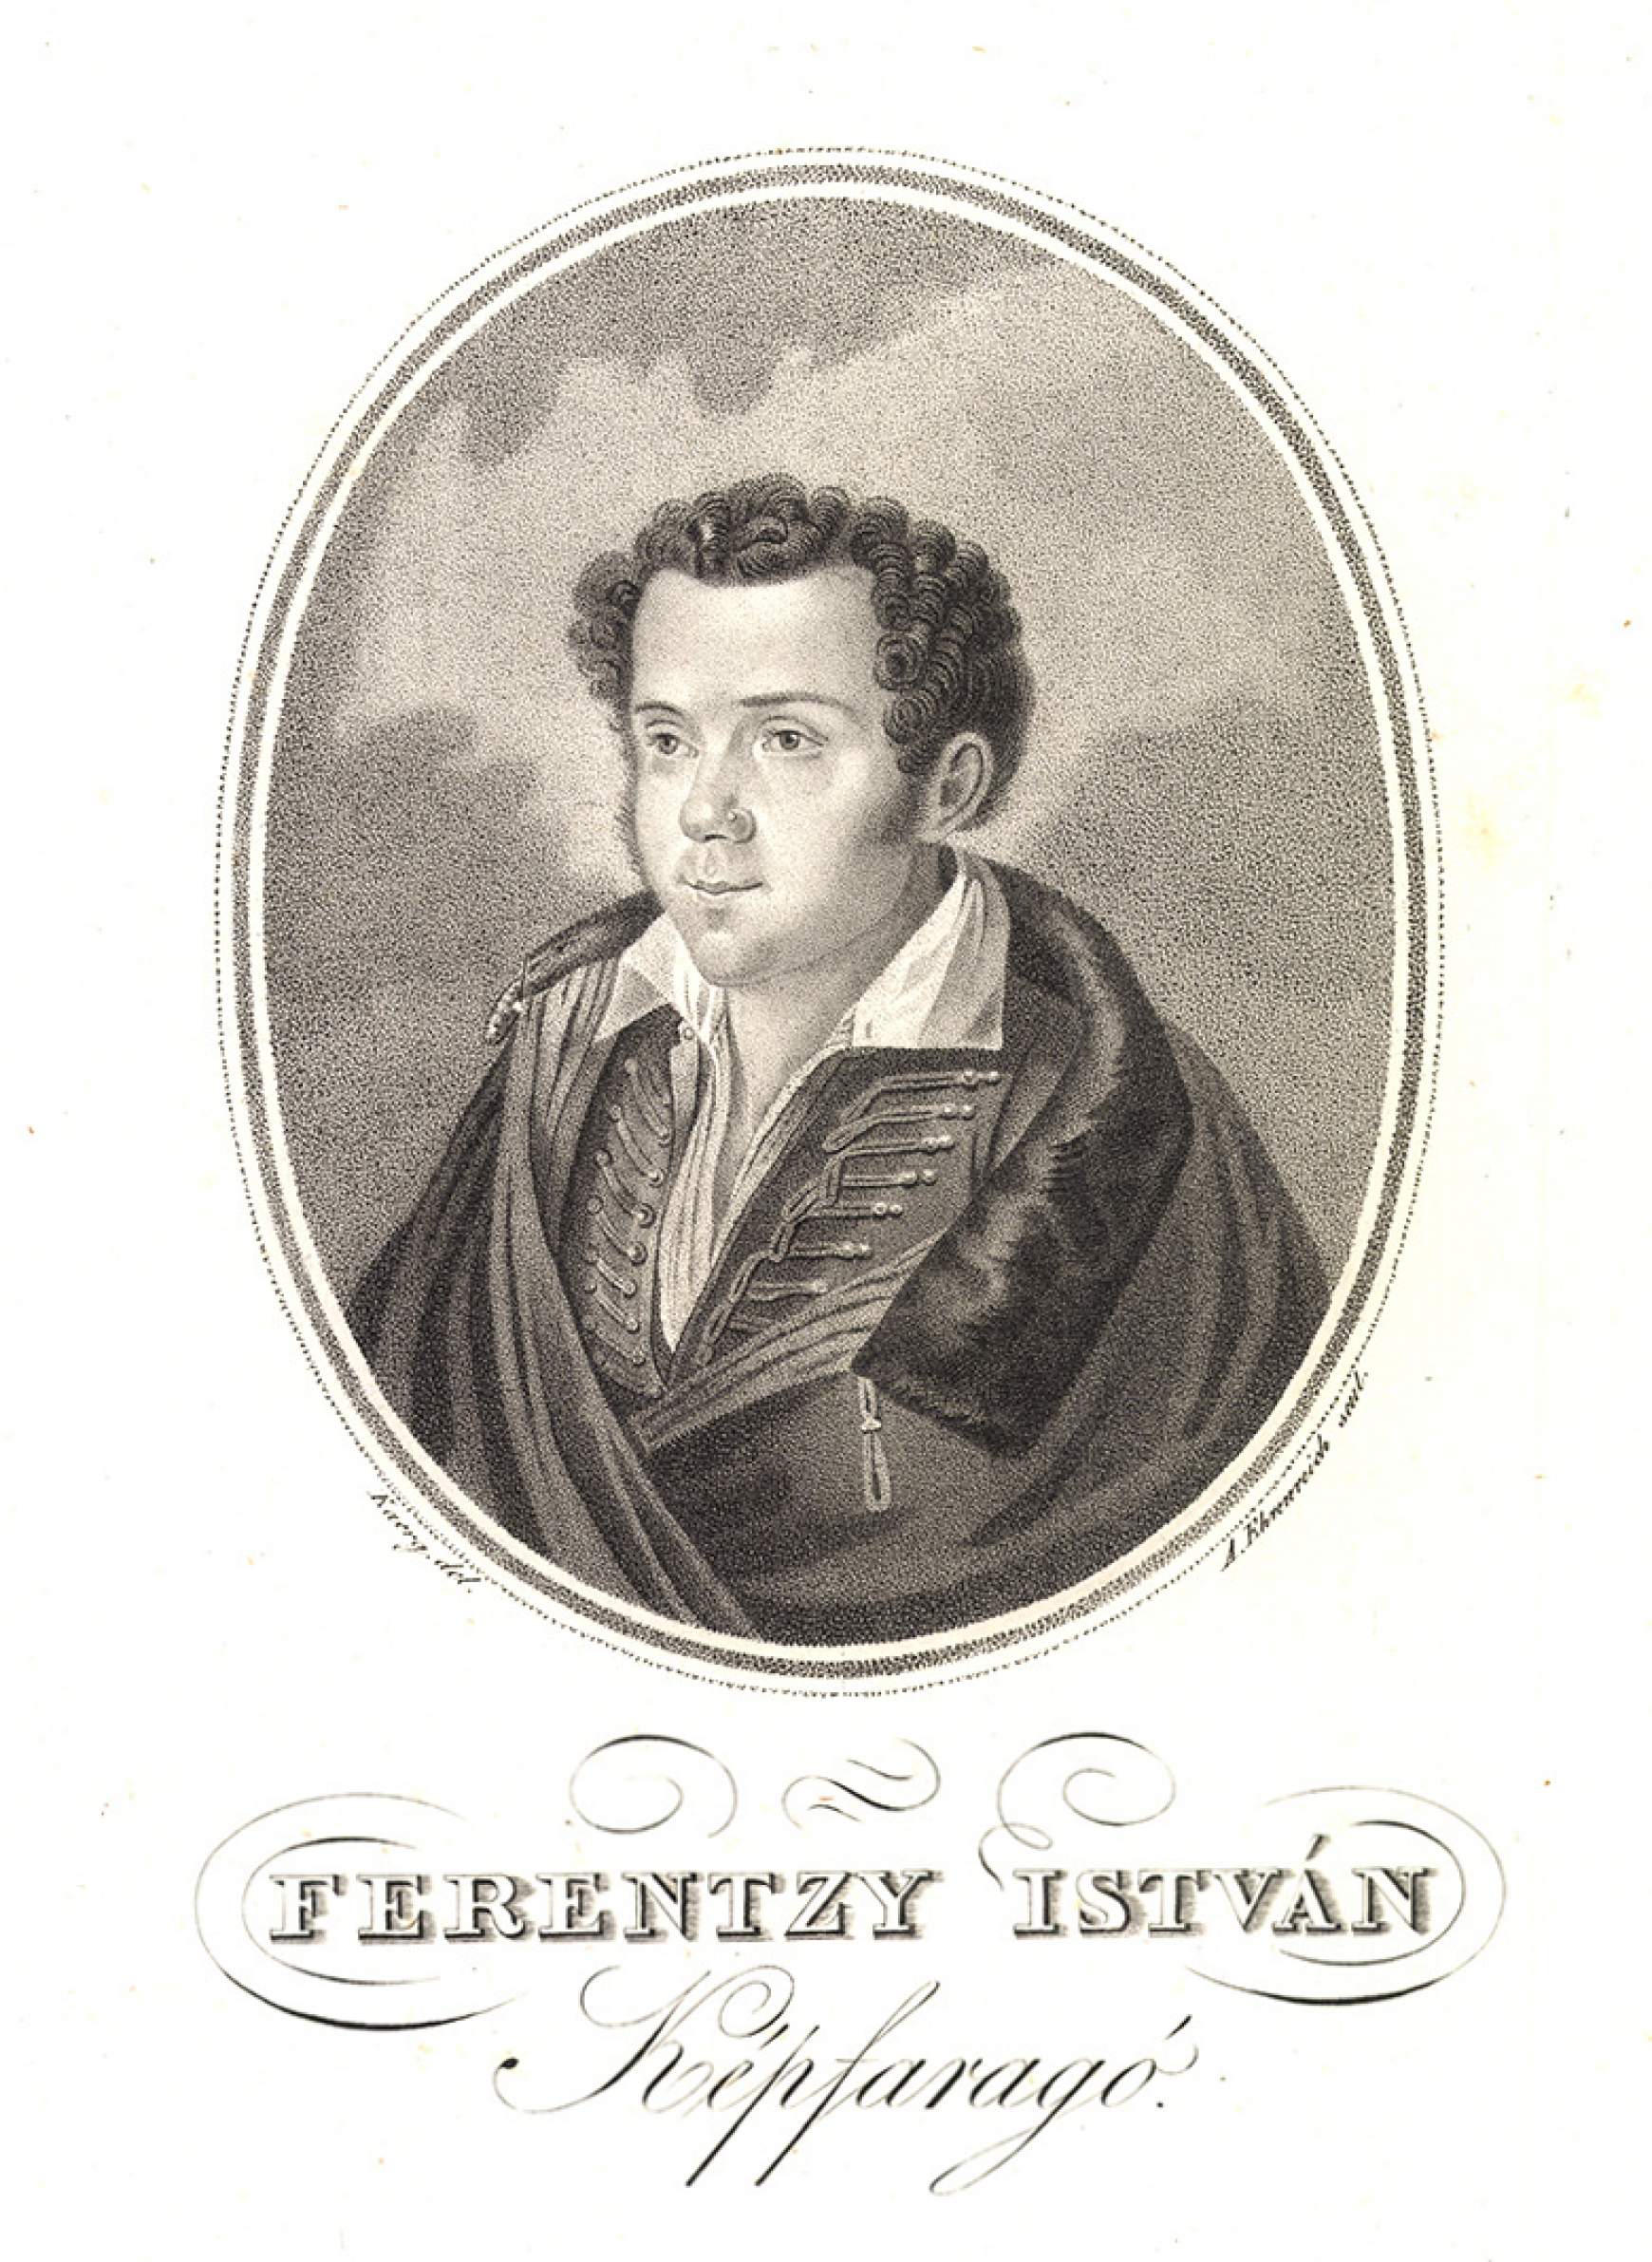 Ferenczy István